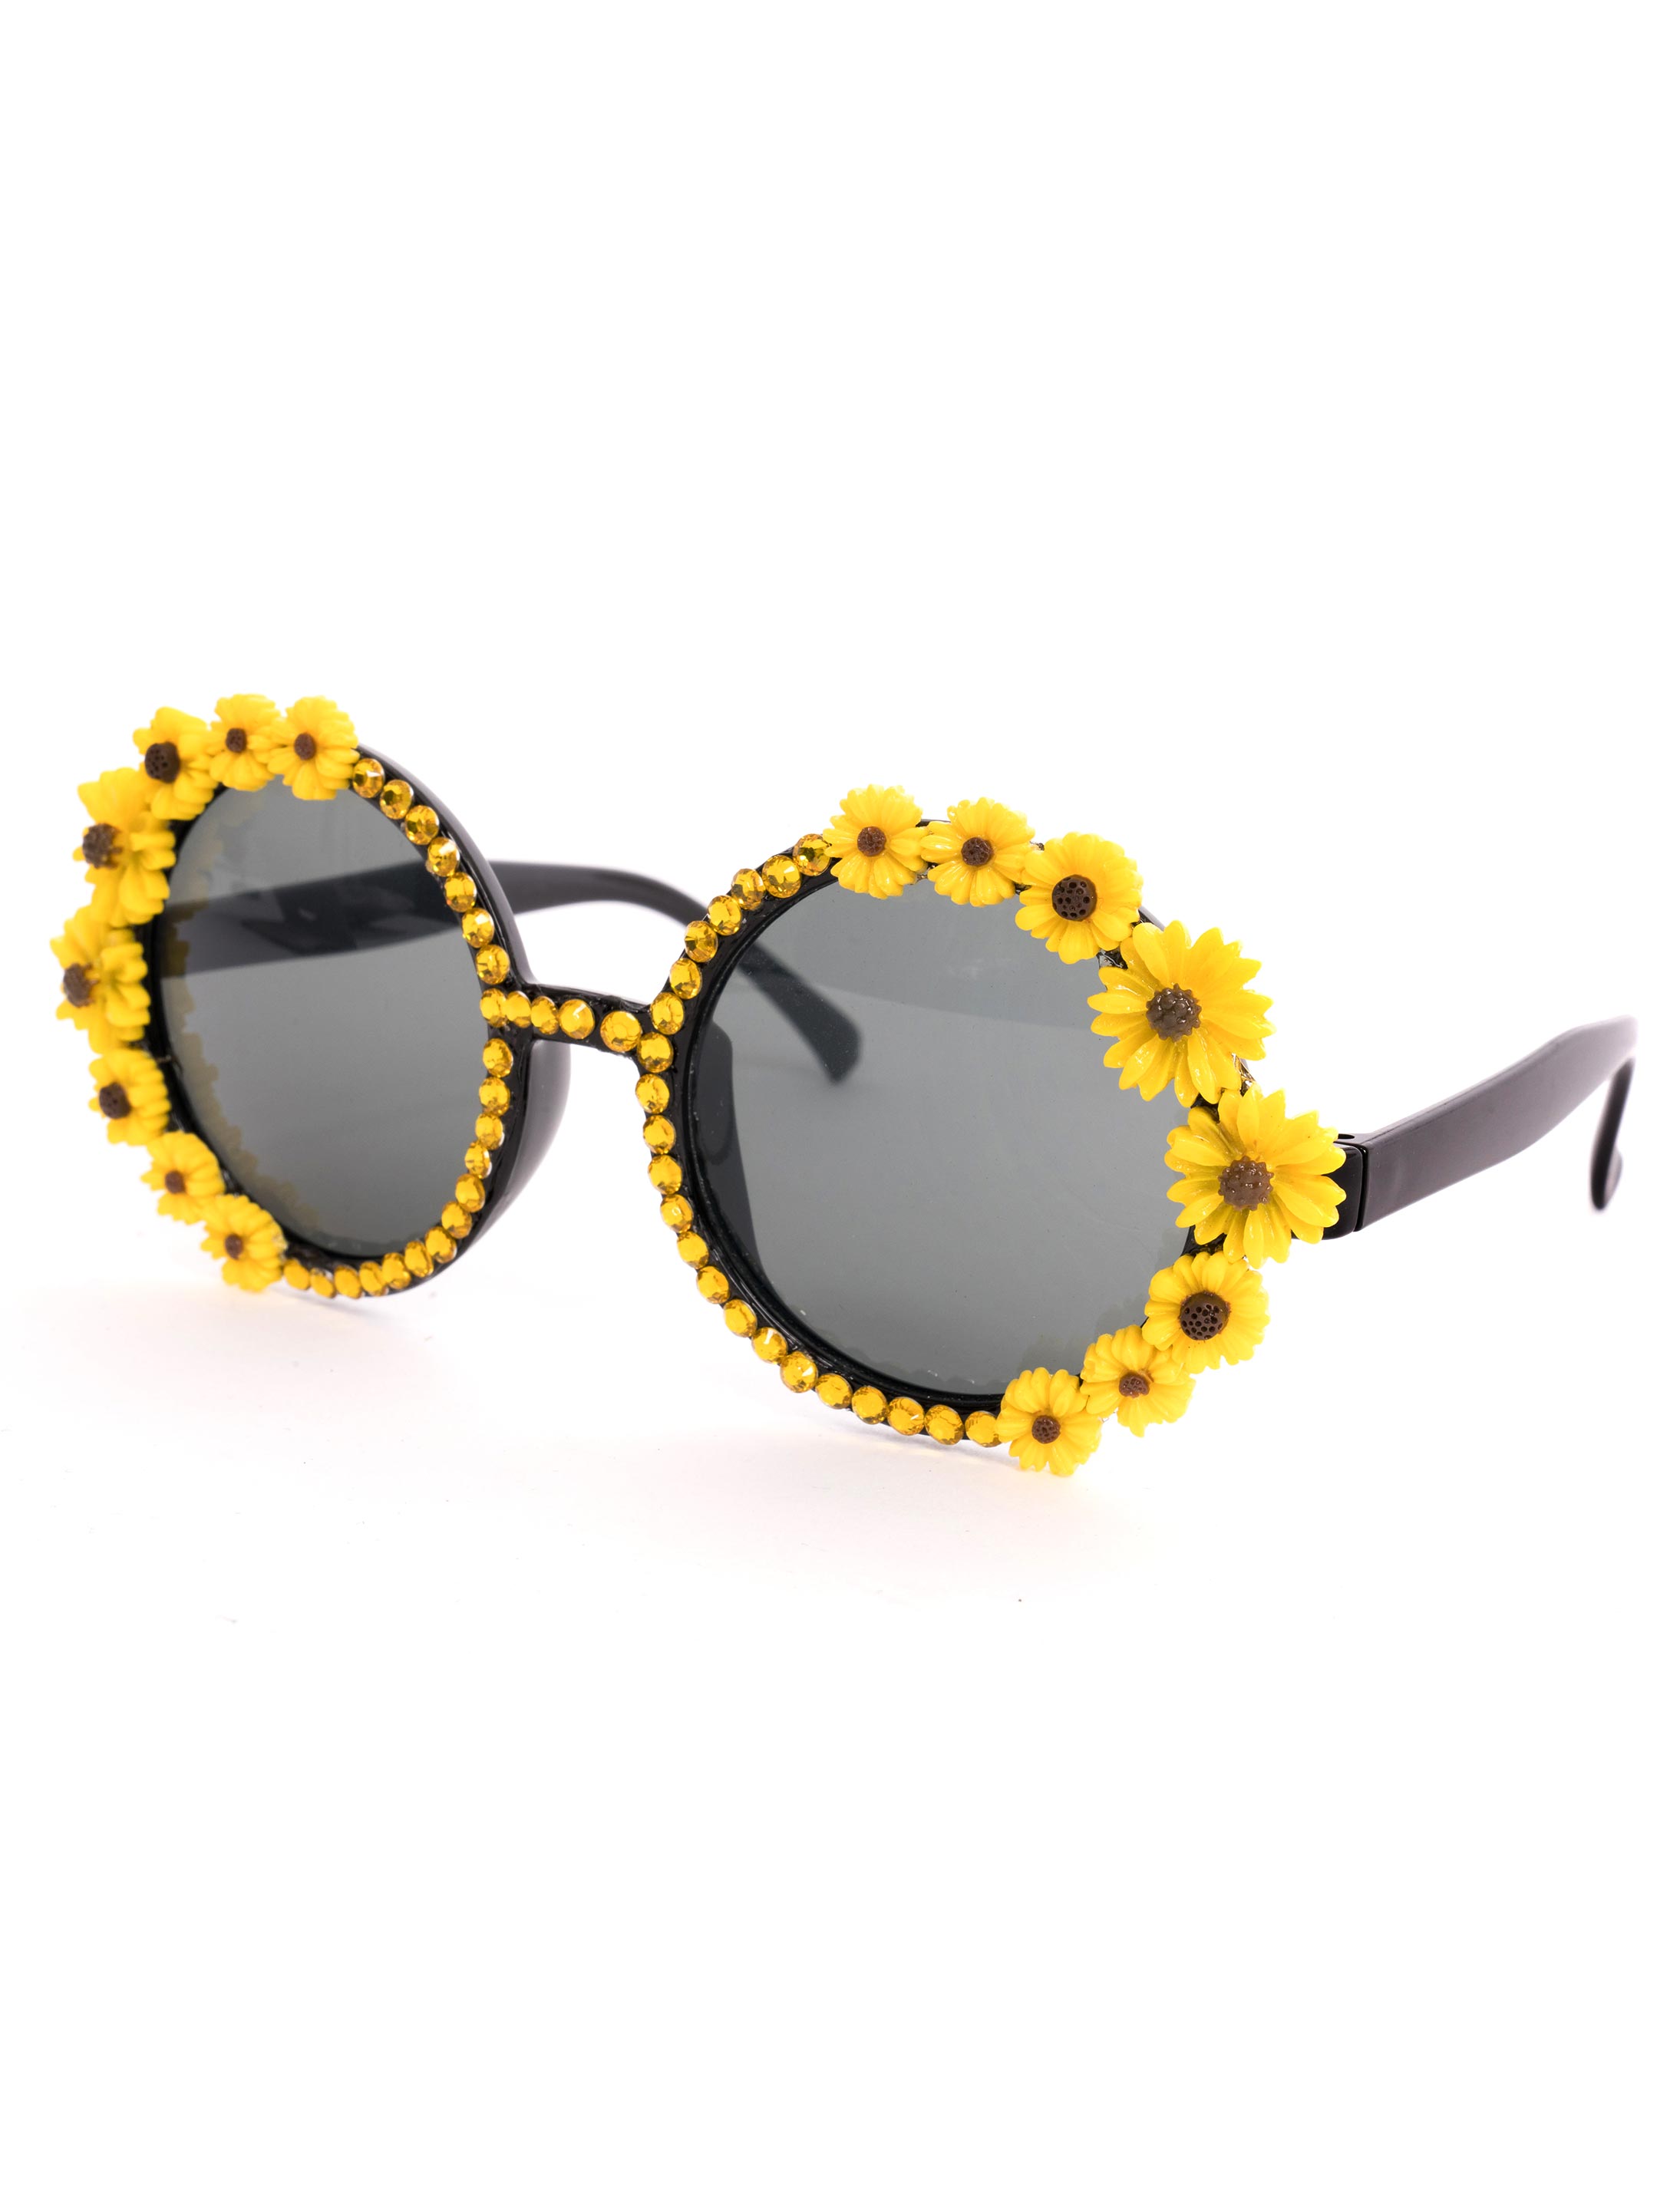 Brille Sonnenblumen mit Steinchen schwarz/gelb